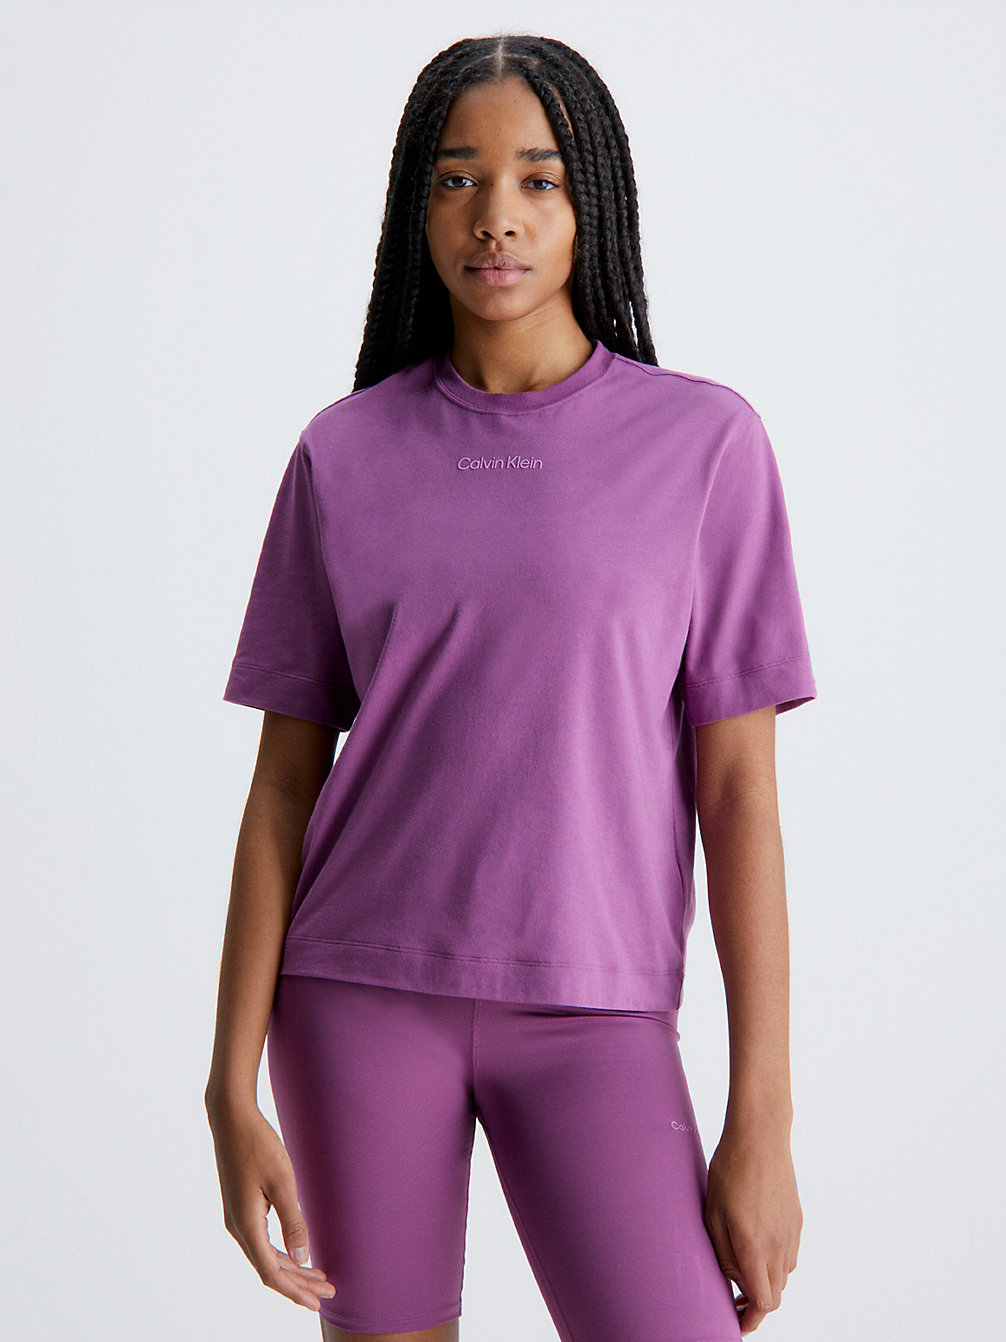 AMETHYST > Gym T-Shirt > undefined Женщины - Calvin Klein